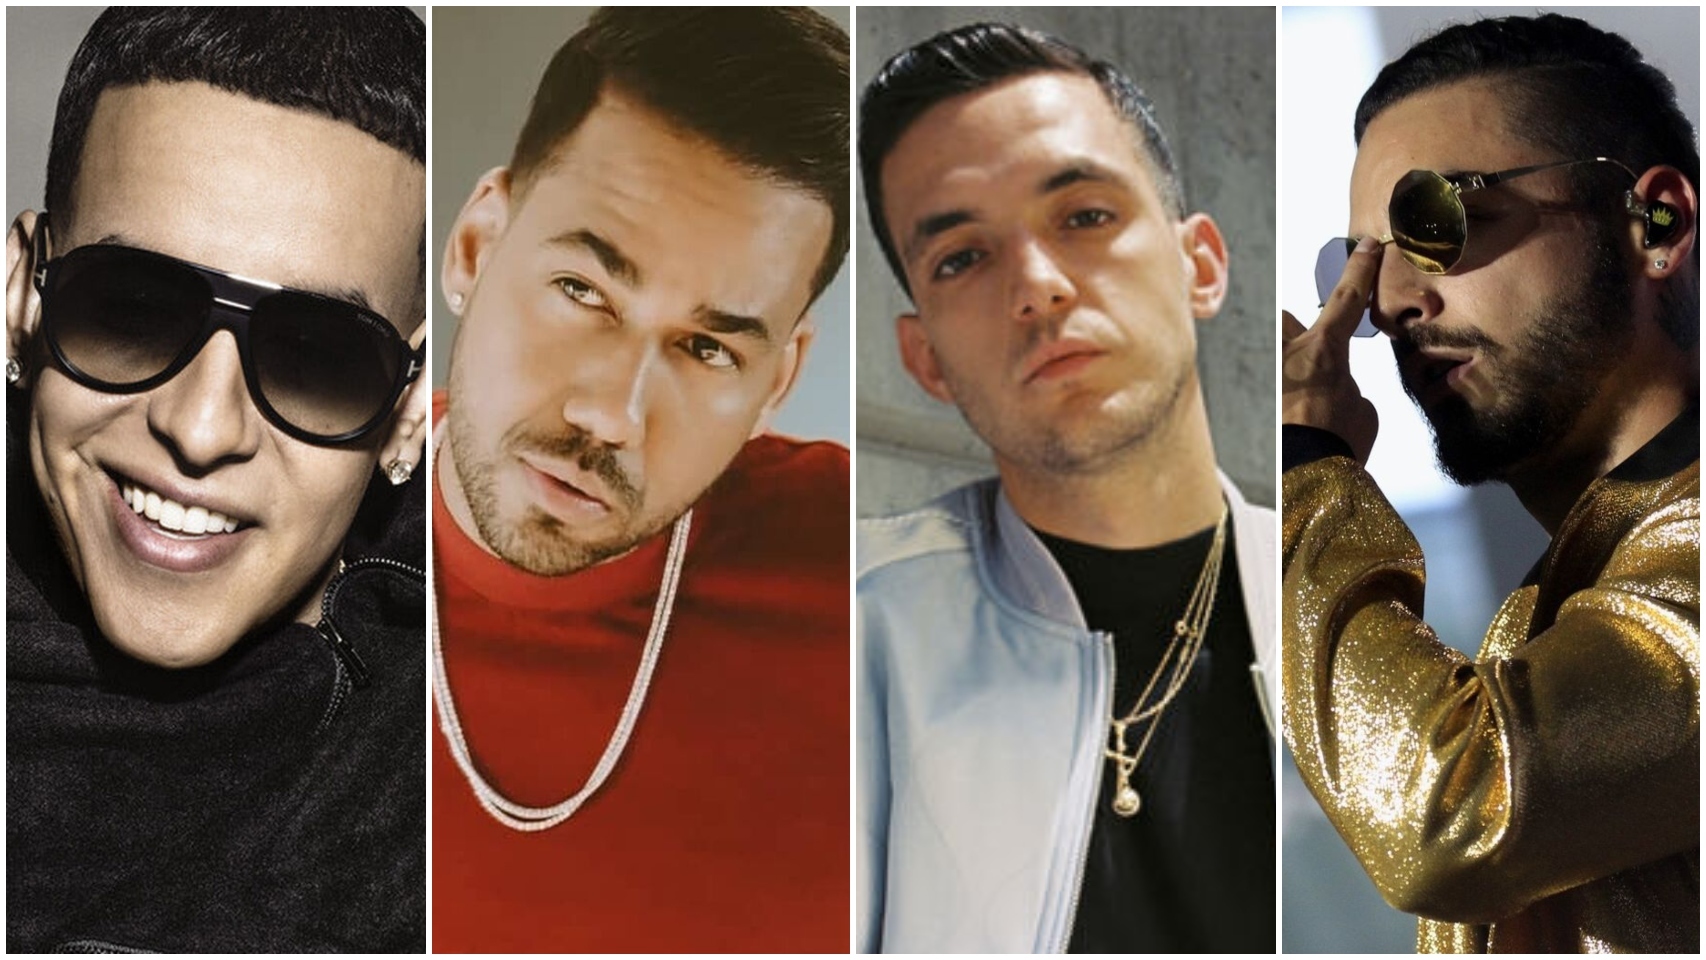 Varios cantantes de reguetón y trap por orden: Daddy Yankee, Romeo Santos, C. Tangana y Maluma.